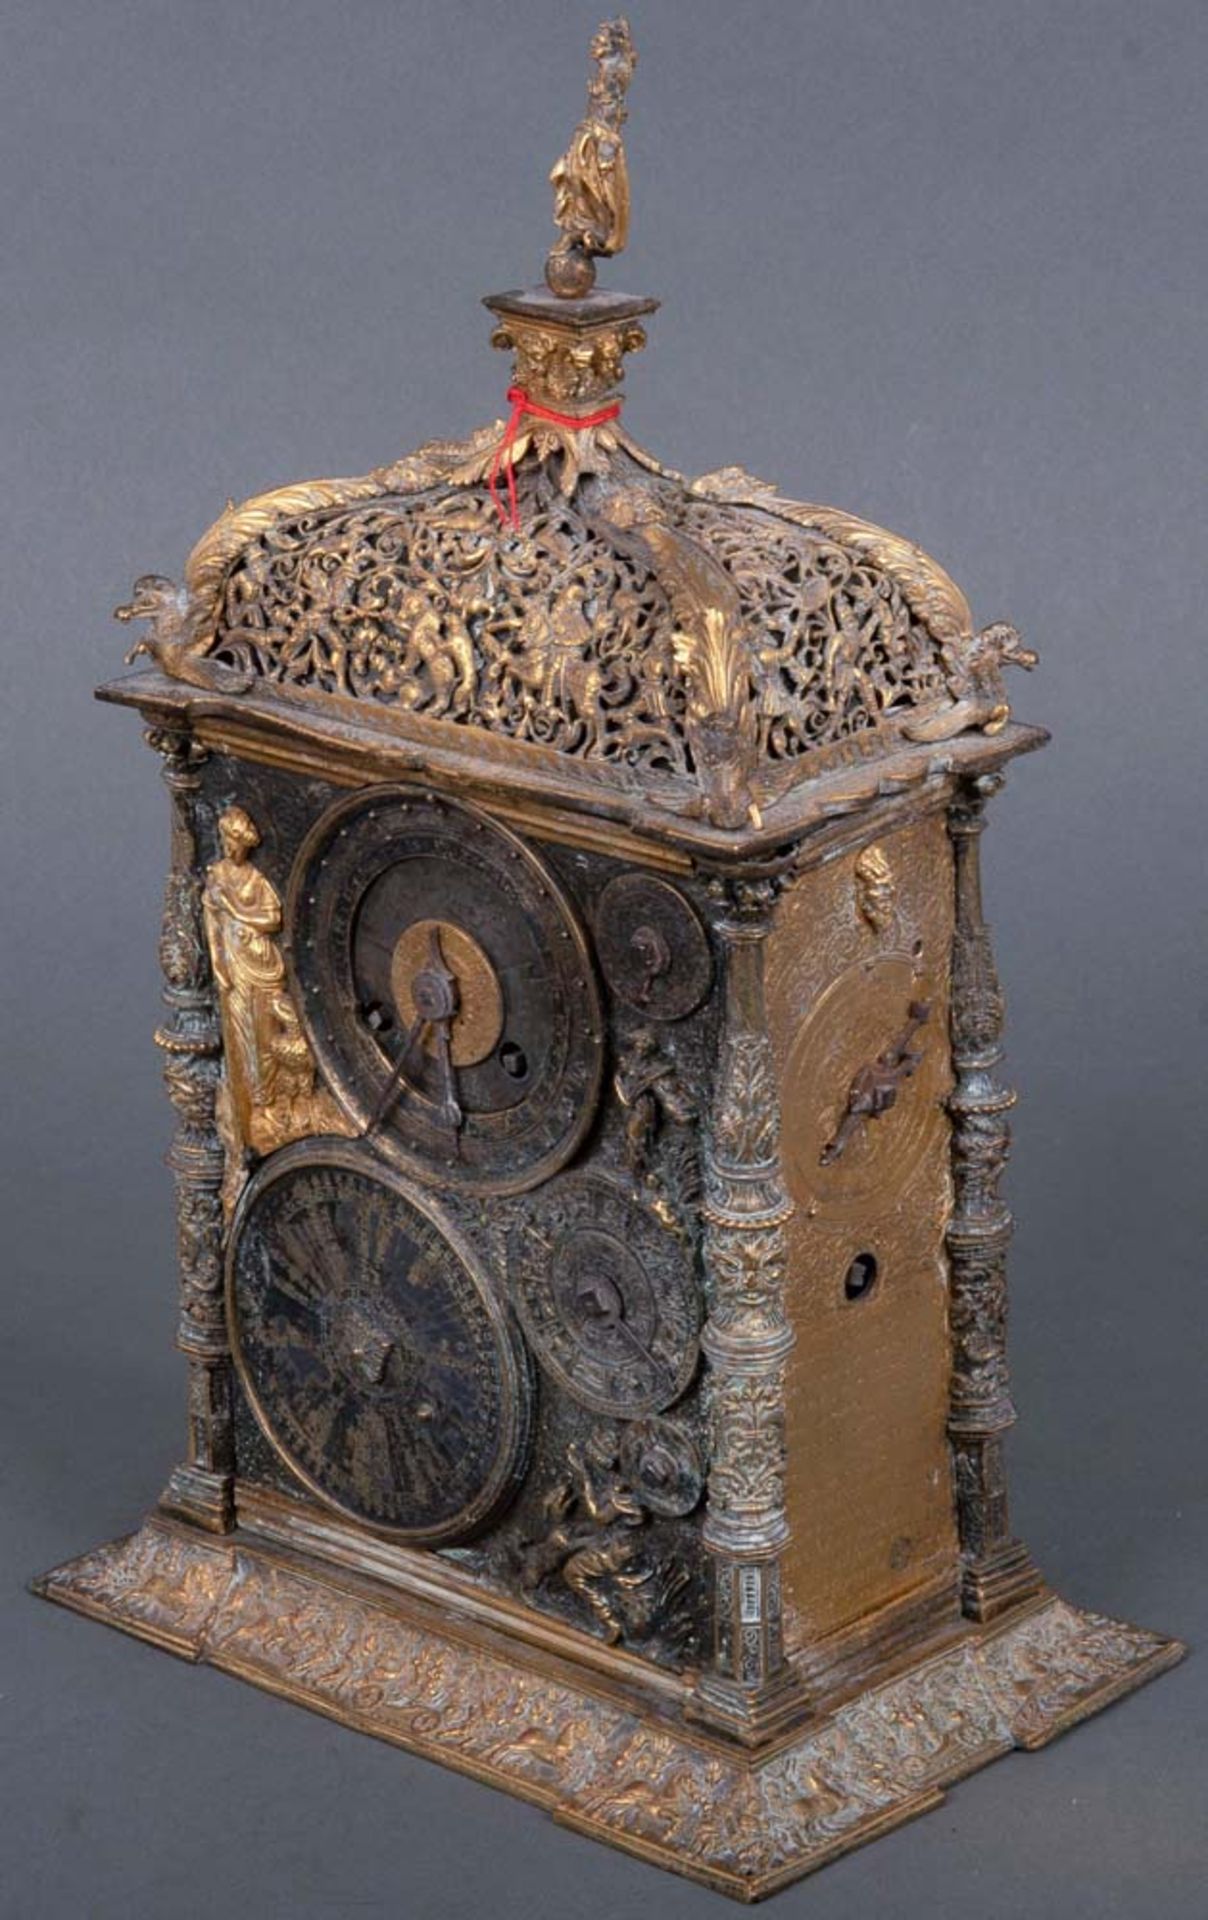 Astronomische Tischuhr. Augsburg. Bronze / Eisen, teilw. vergoldet, durchbrochen, ziseliert und